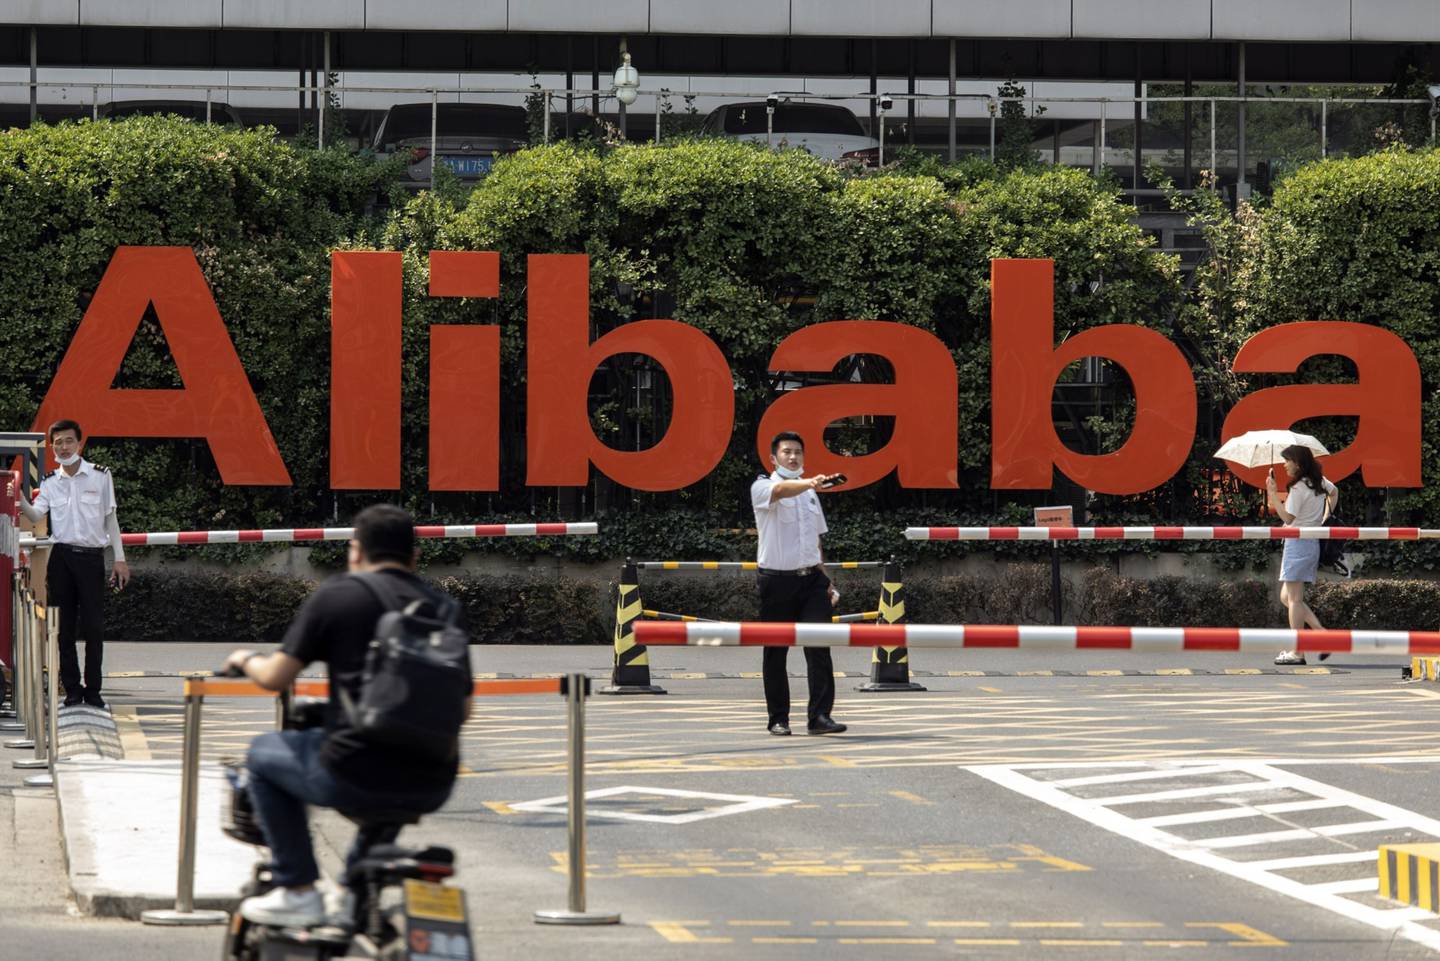 Logo de Alibaba en su sede de Hangzhou, China.dfd